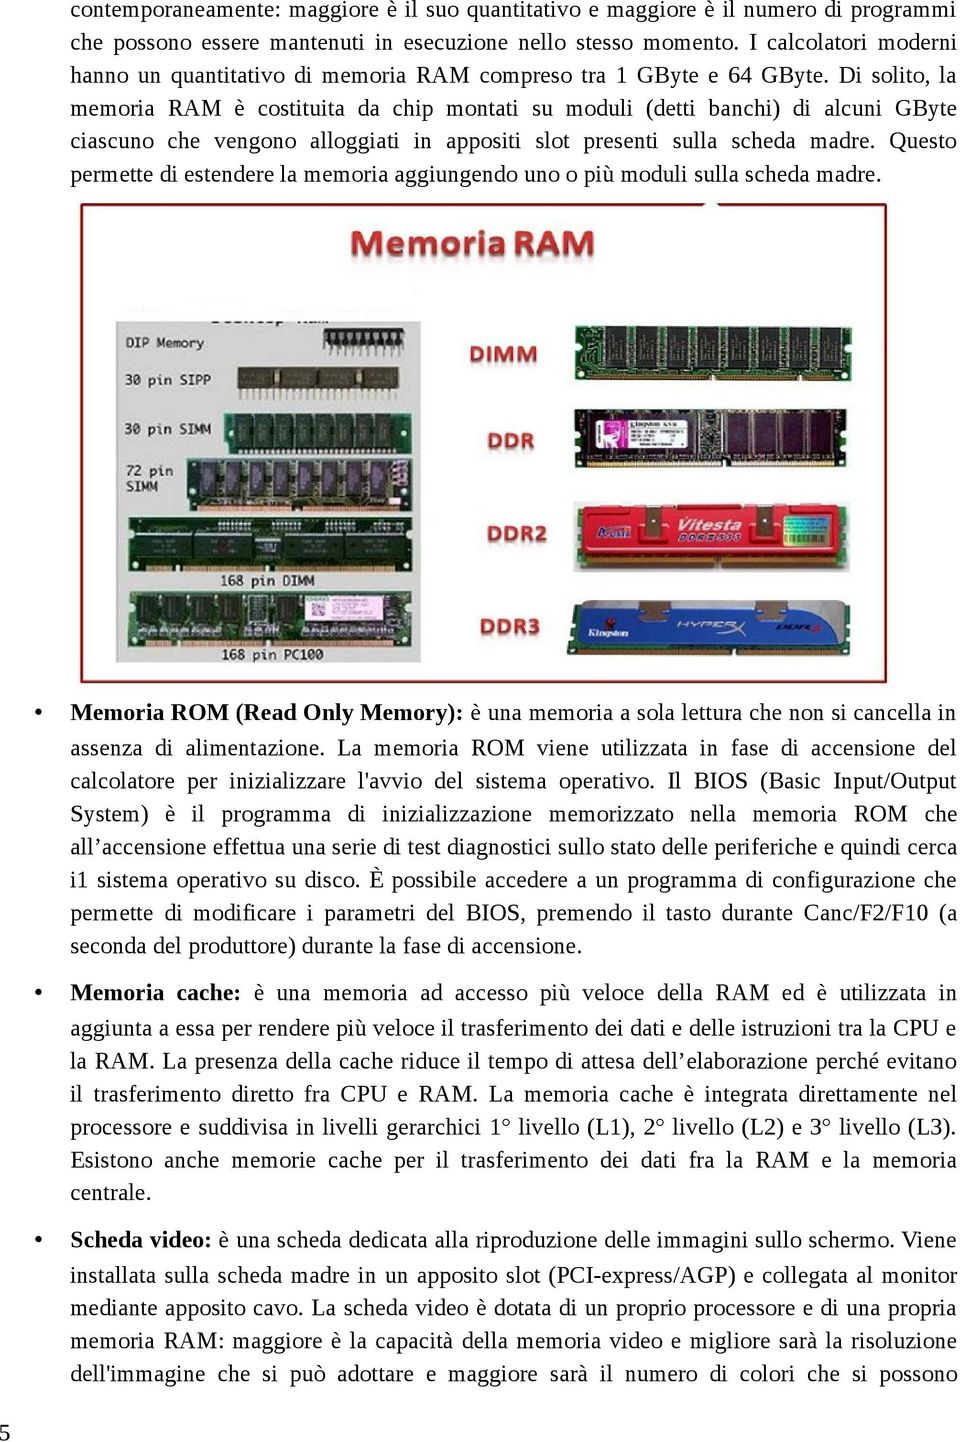 Di solito, la memoria RAM è costituita da chip montati su moduli (detti banchi) di alcuni GByte ciascuno che vengono alloggiati in appositi slot presenti sulla scheda madre.